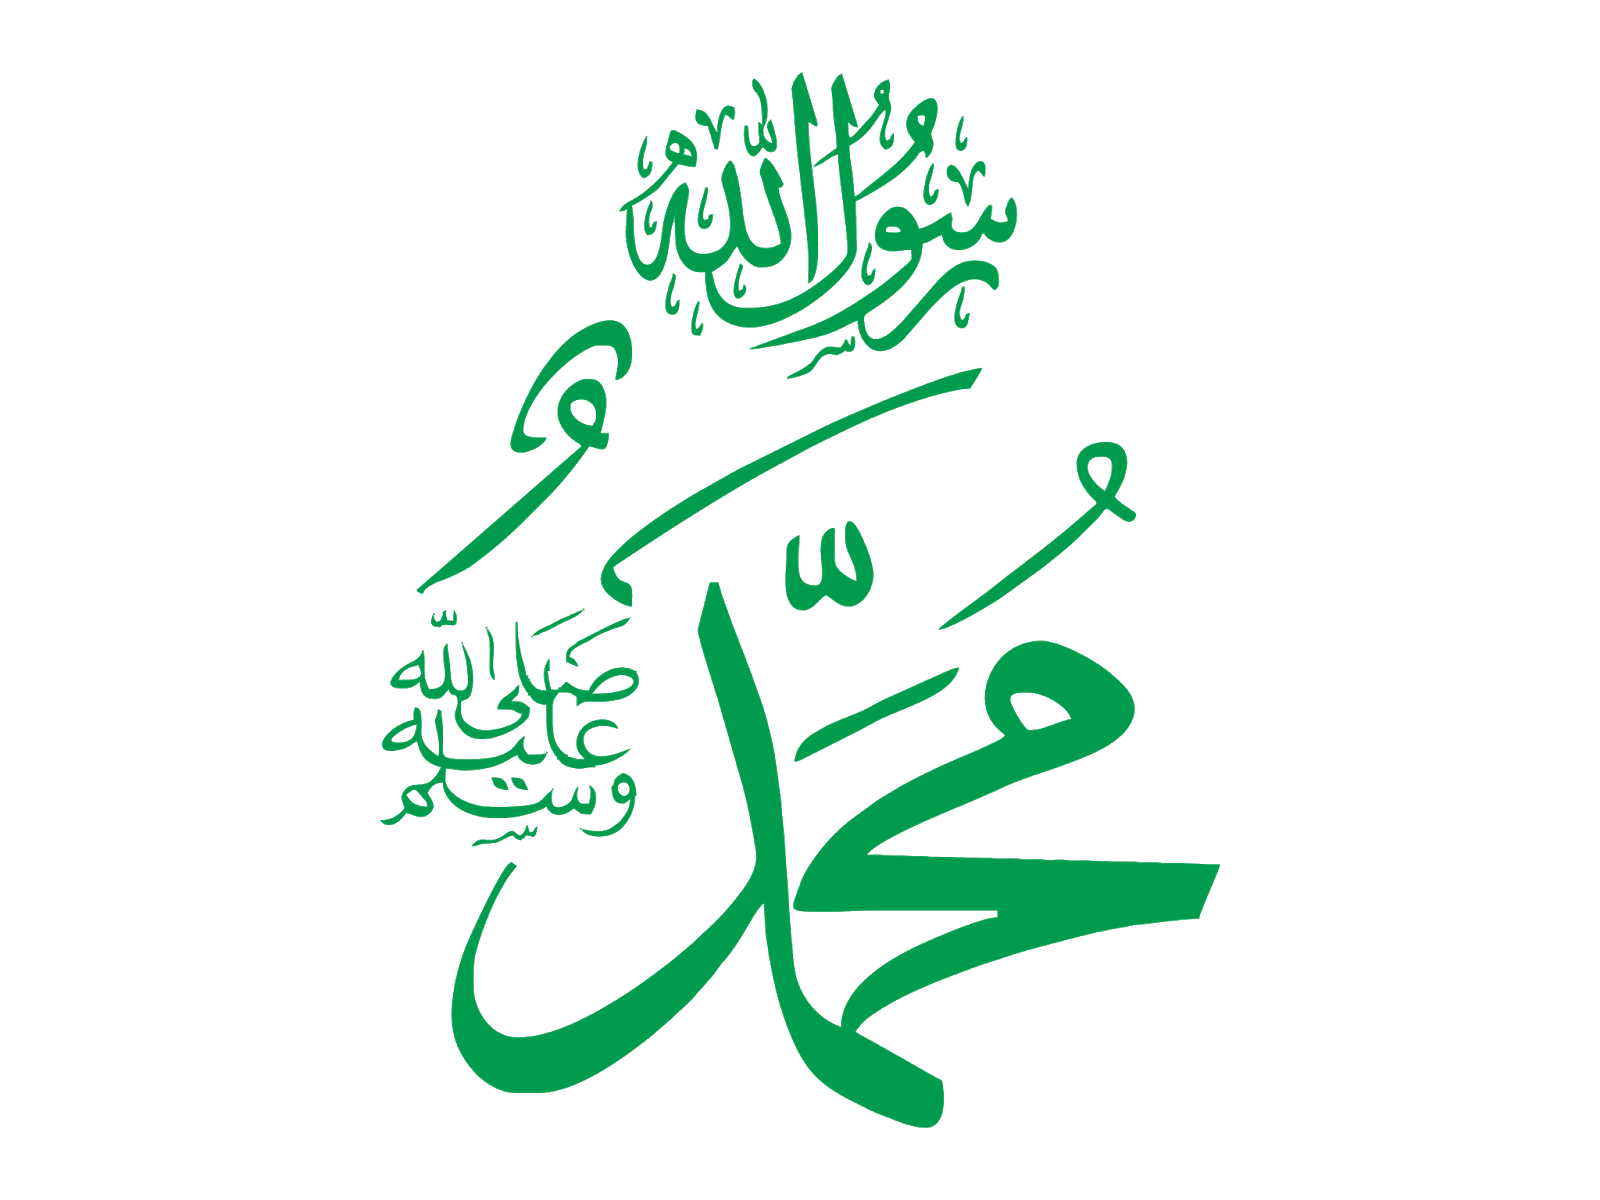 Имя пророка Мухаммеда на арабском. Пророк Мухаммад каллиграфия. Имя пророка Мухаммеда на арабском языке. Пророк Мухаммед надпись на арабском.